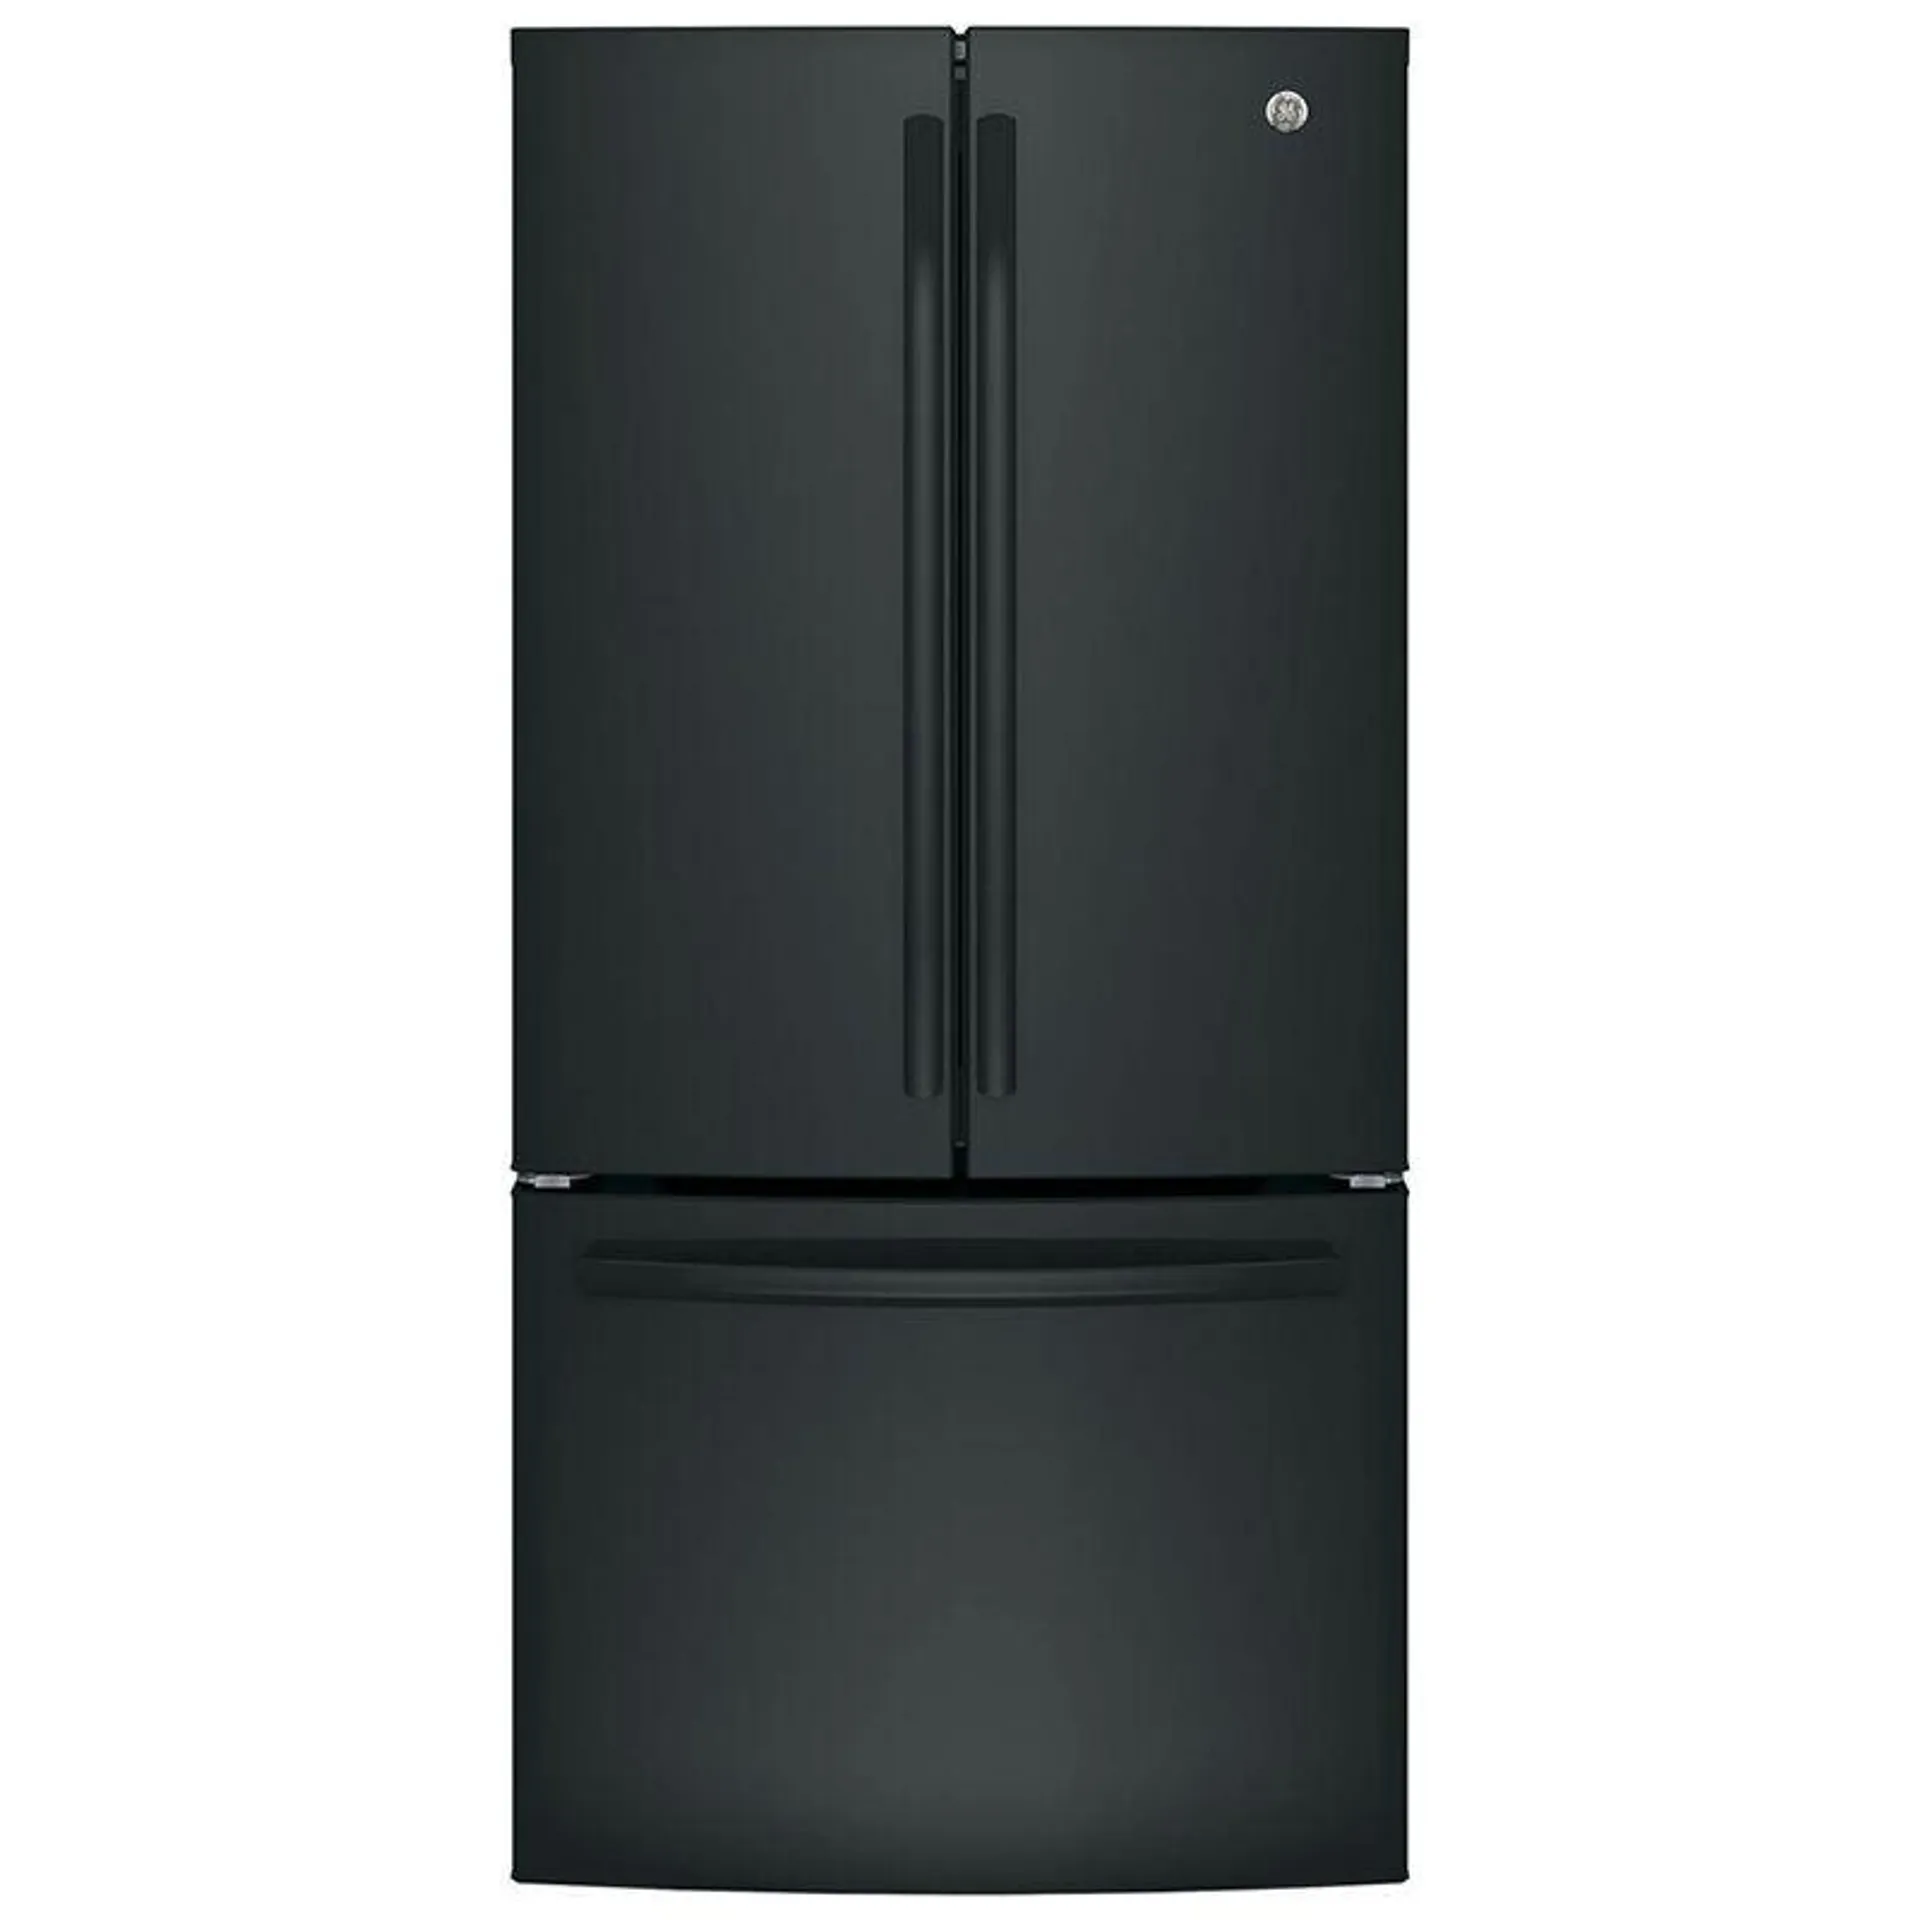 GE 33 in. 18.6 cu. ft. French Door Refrigerator - Black